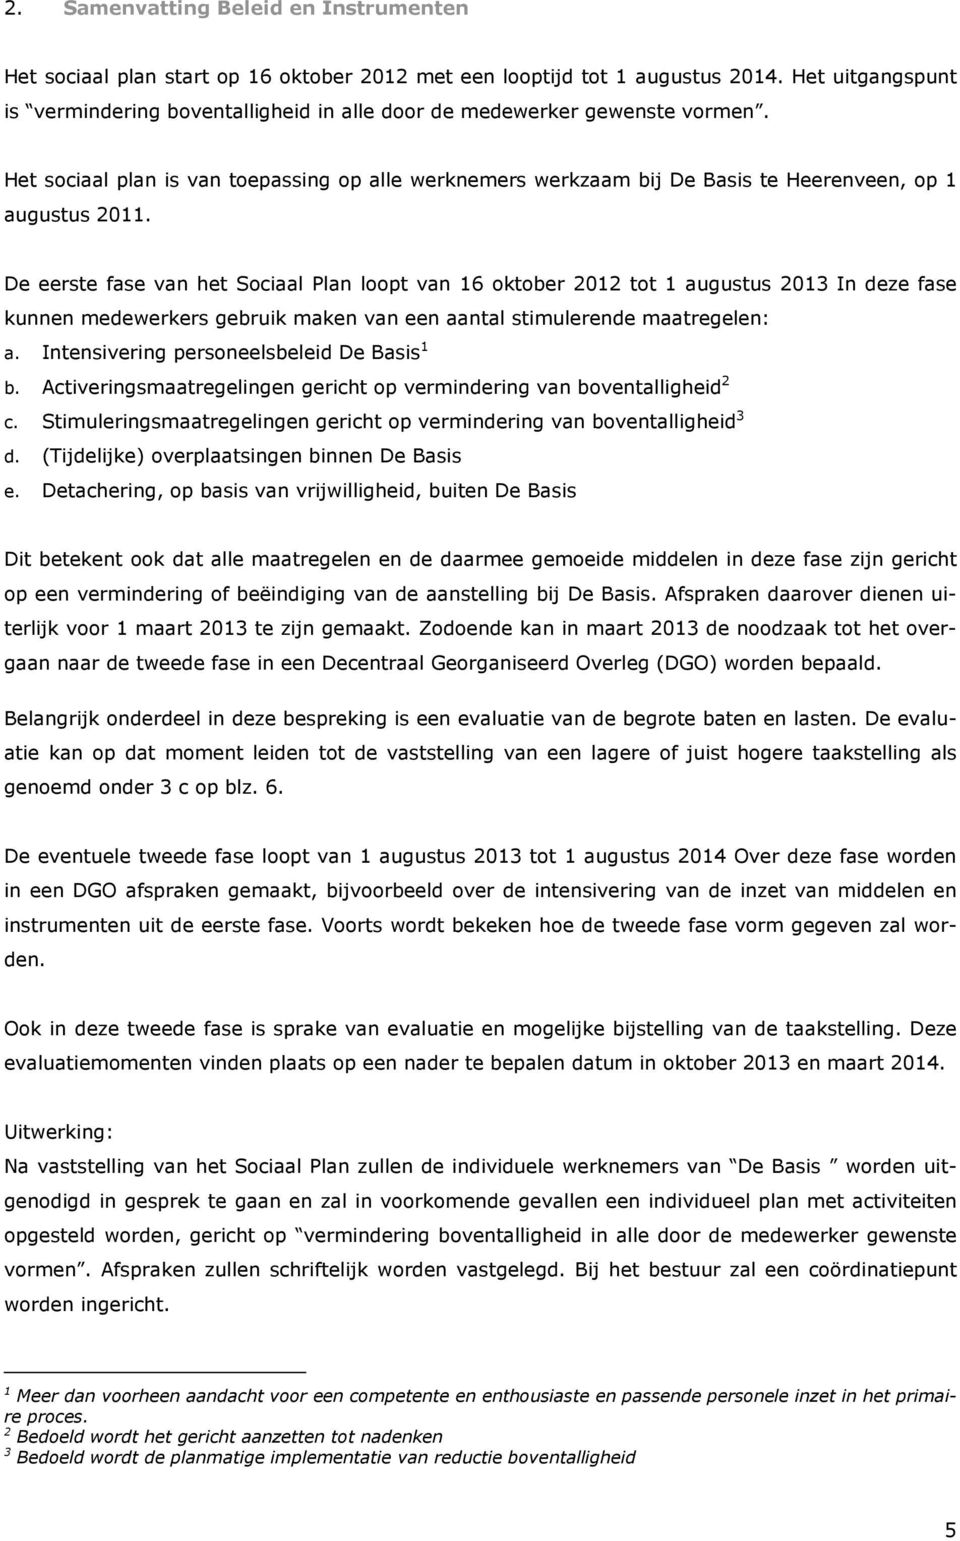 Het sociaal plan is van toepassing op alle werknemers werkzaam bij De Basis te Heerenveen, op 1 augustus 2011.